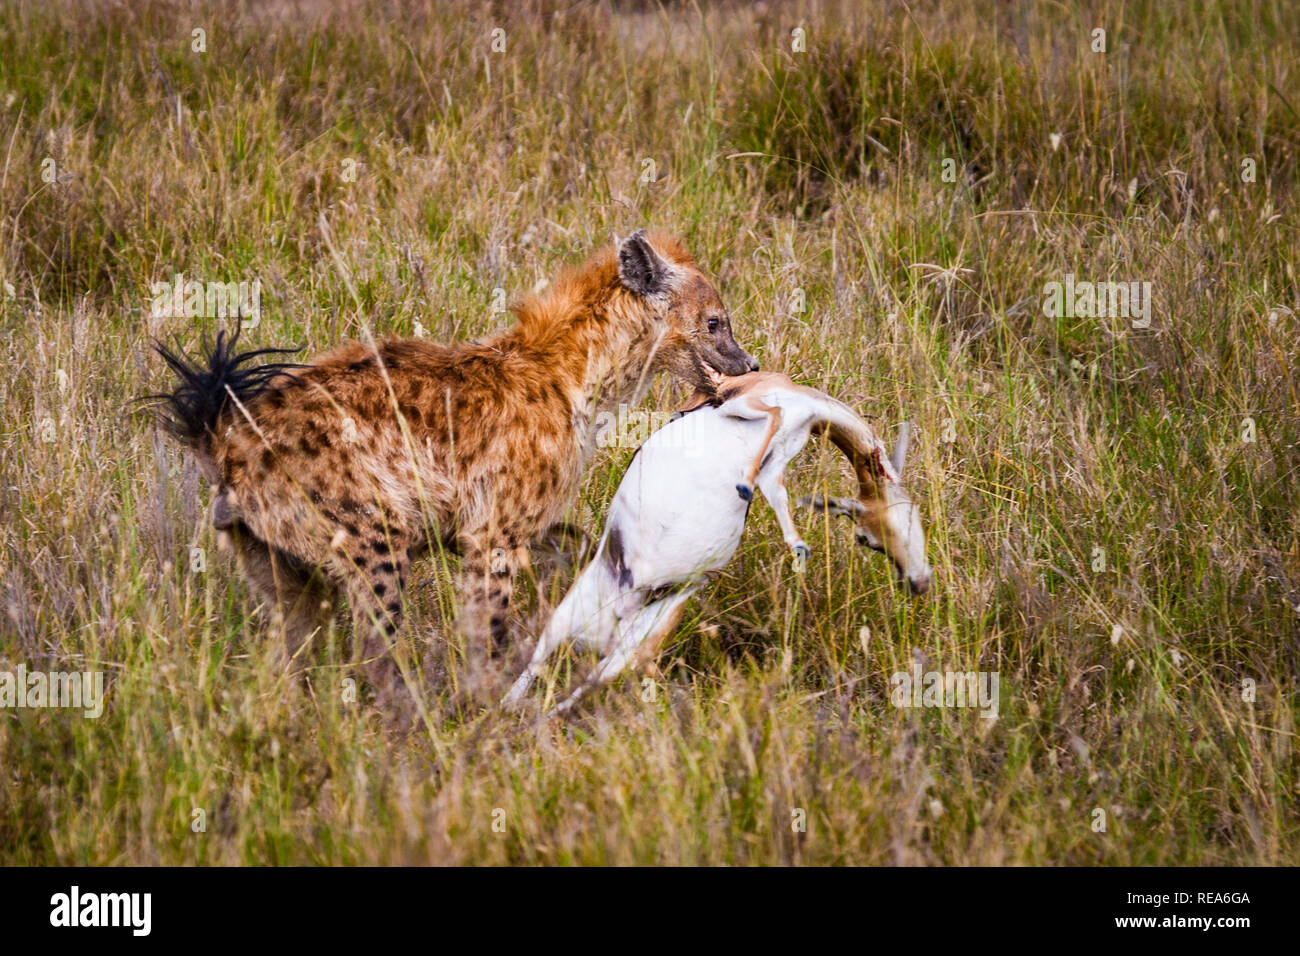 Cheetah mit Töten, Thompson Gazellen, Serengeti National Park, Tansania; Sequenz; Hyäne stiehlt der Geparden töten. Stockfoto